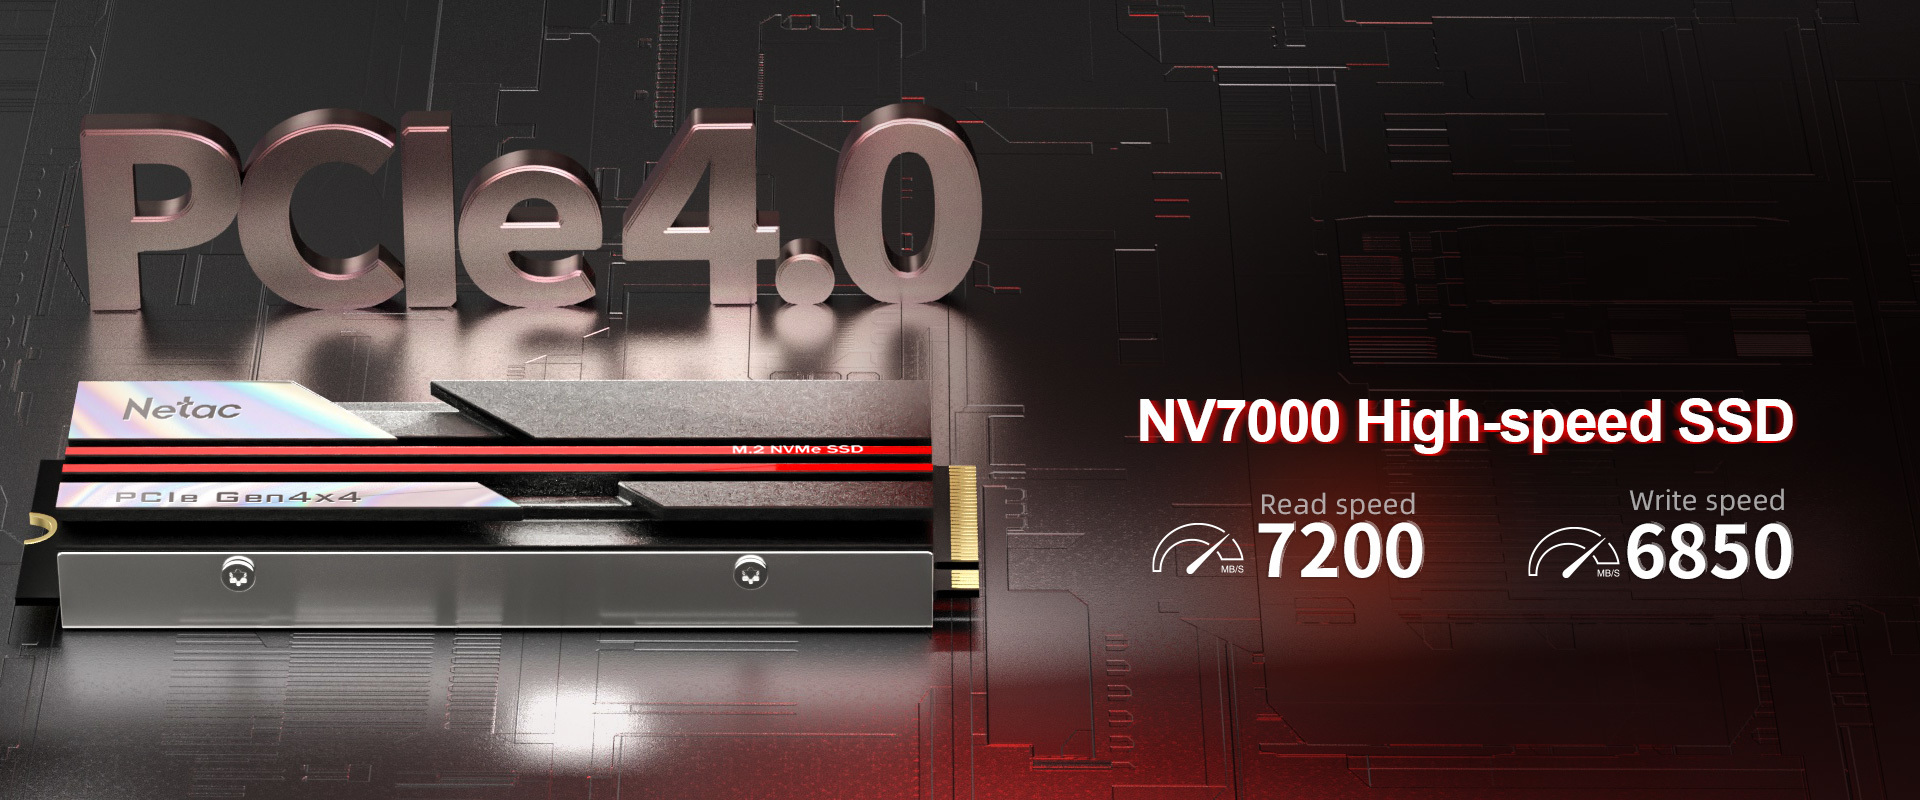 NV7000 High-speed SSD